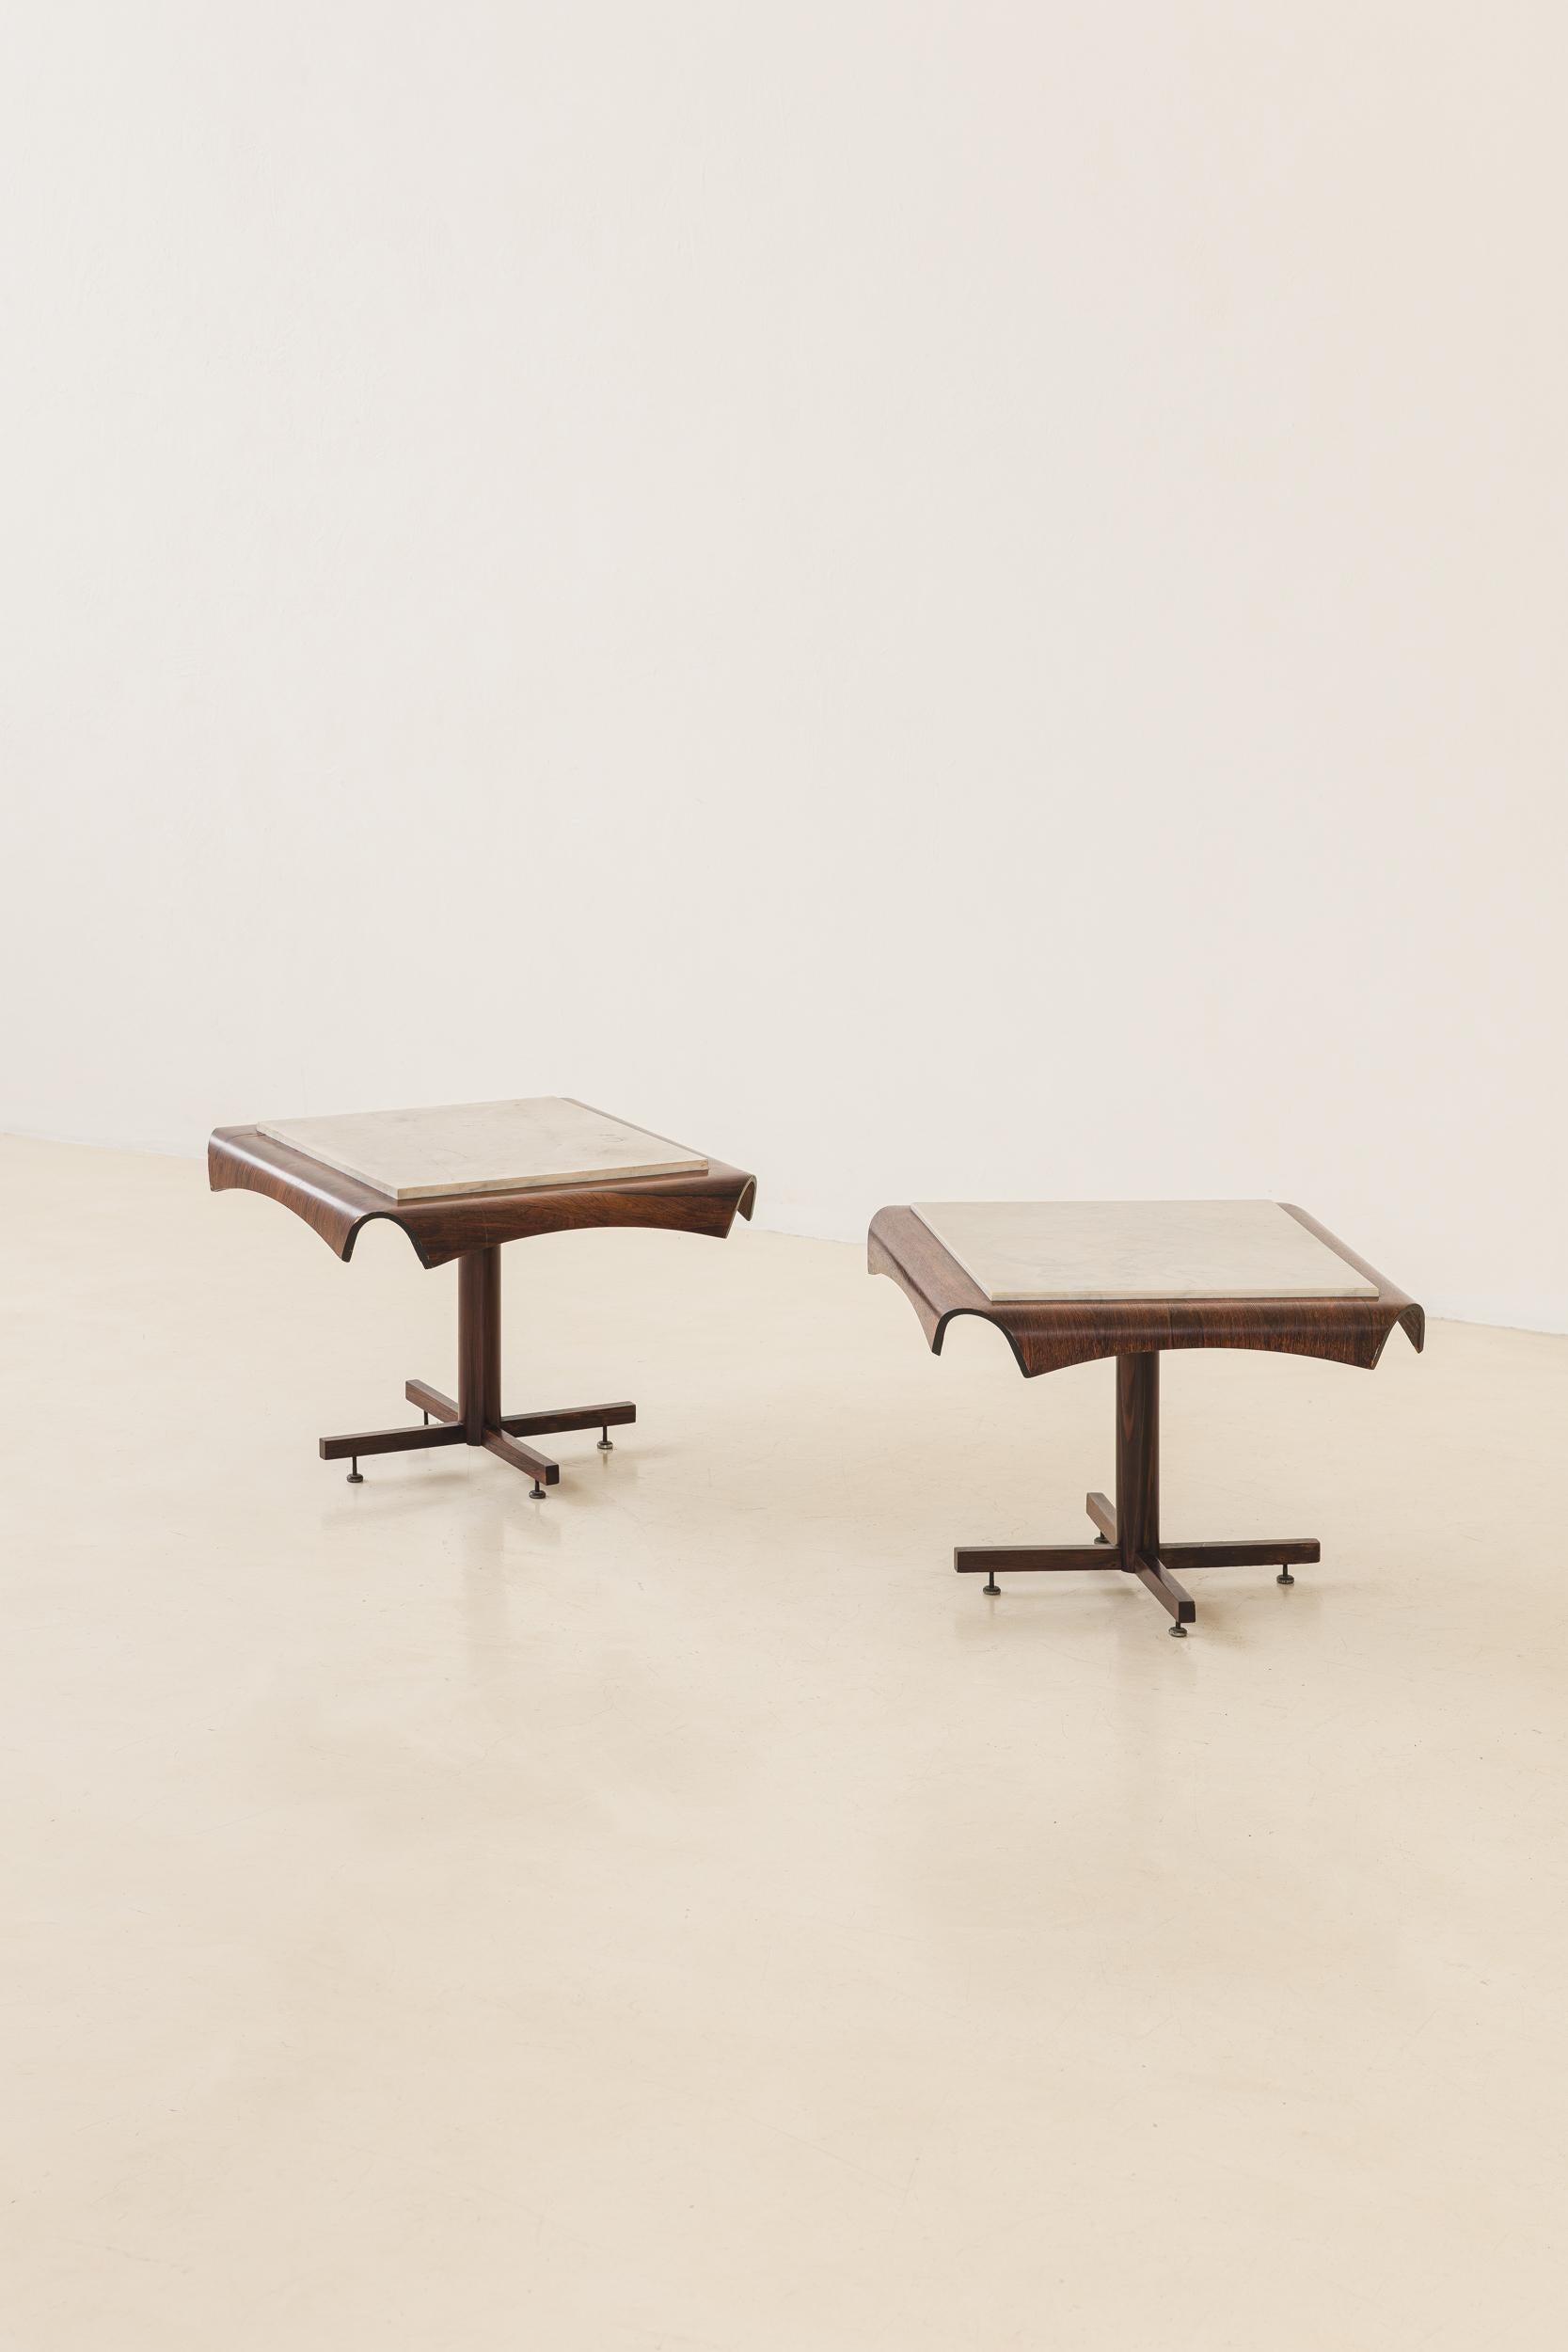 Dieser fantastische Beistelltisch wurde von Jorge Zalszupin (1922-2020) entworfen und von seinem Unternehmen L'Atelier um 1960 hergestellt.
Der Tisch besteht aus einer Eisenstruktur mit Füßen aus Palisanderholz und einer Platte aus einem Stück